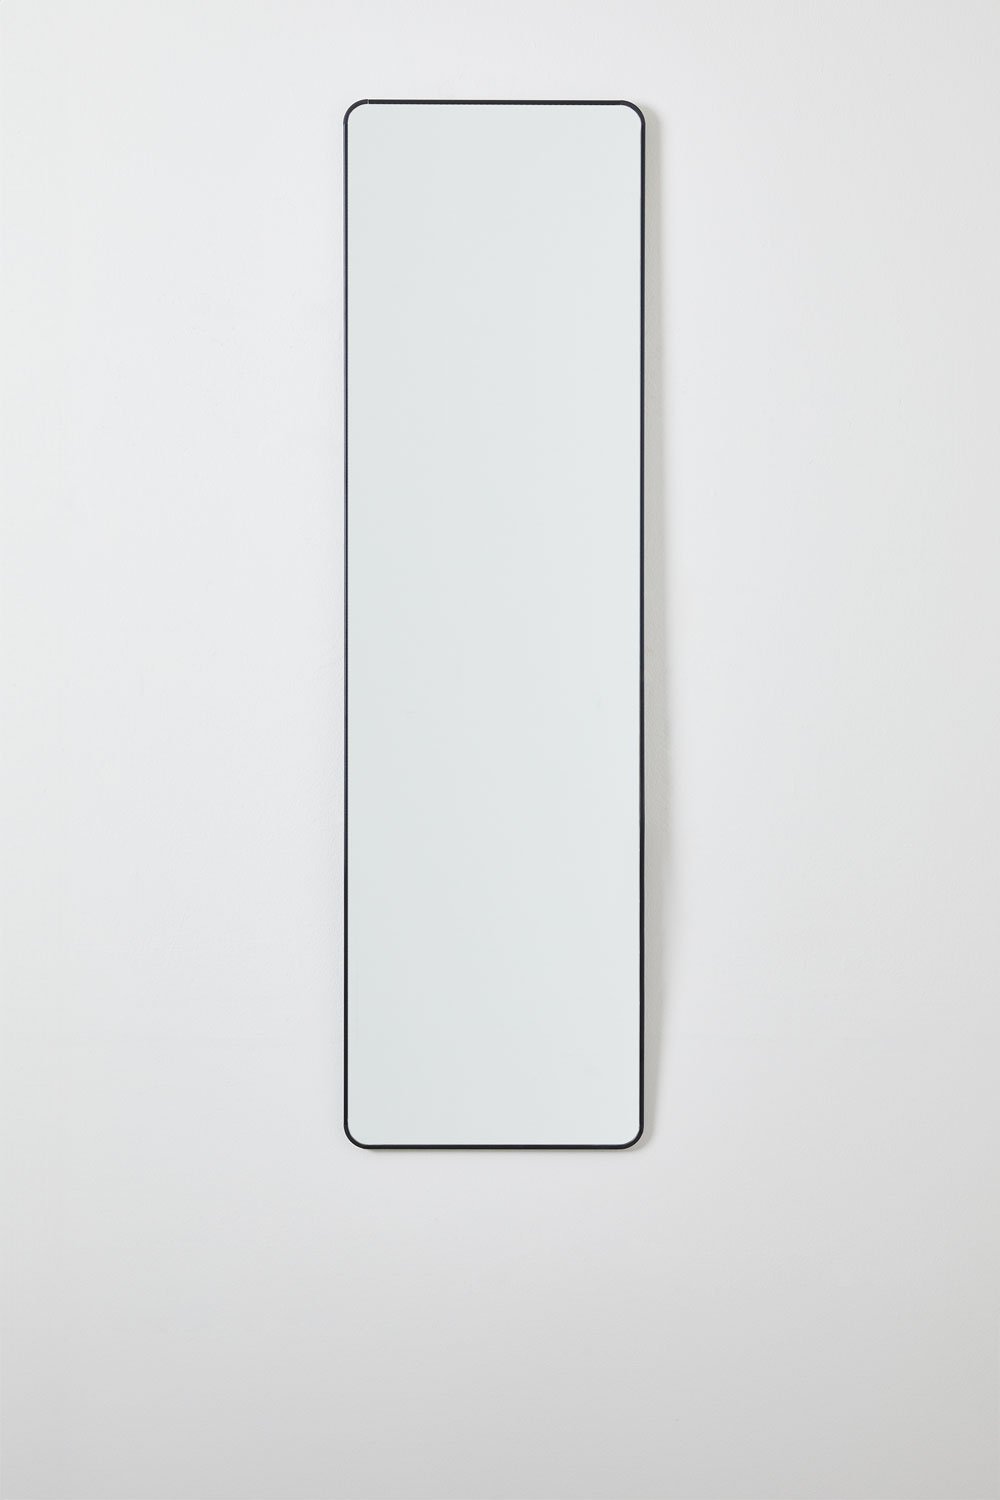 Specchio da parete rettangolare in alluminio (35x120 cm) Sadint, immagine della galleria 1